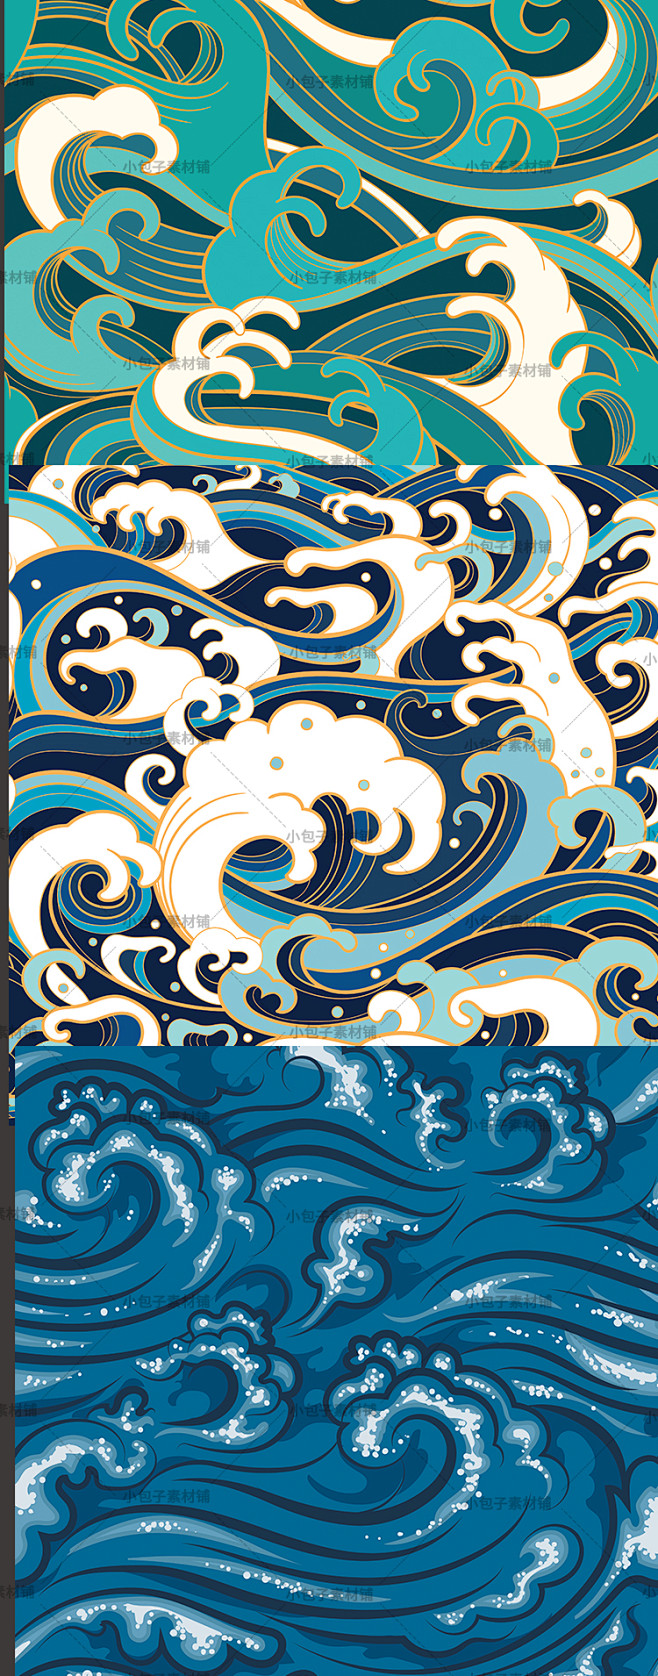 中式海浪浪花底纹背景中国水纹日式图纹高清几何线条纹理设计素材淘宝